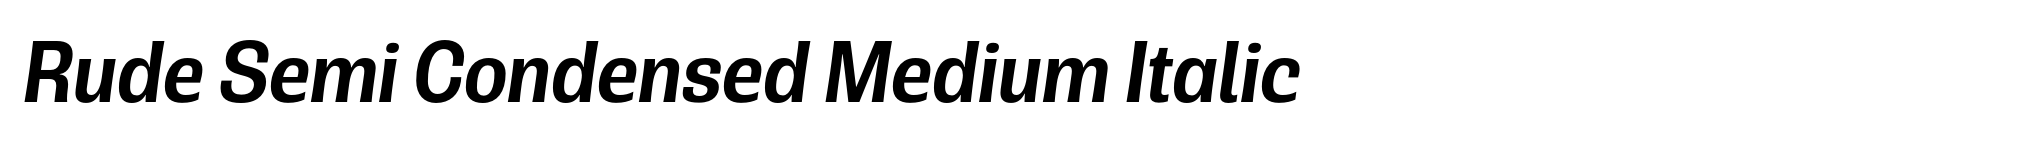 Rude Semi Condensed Medium Italic image